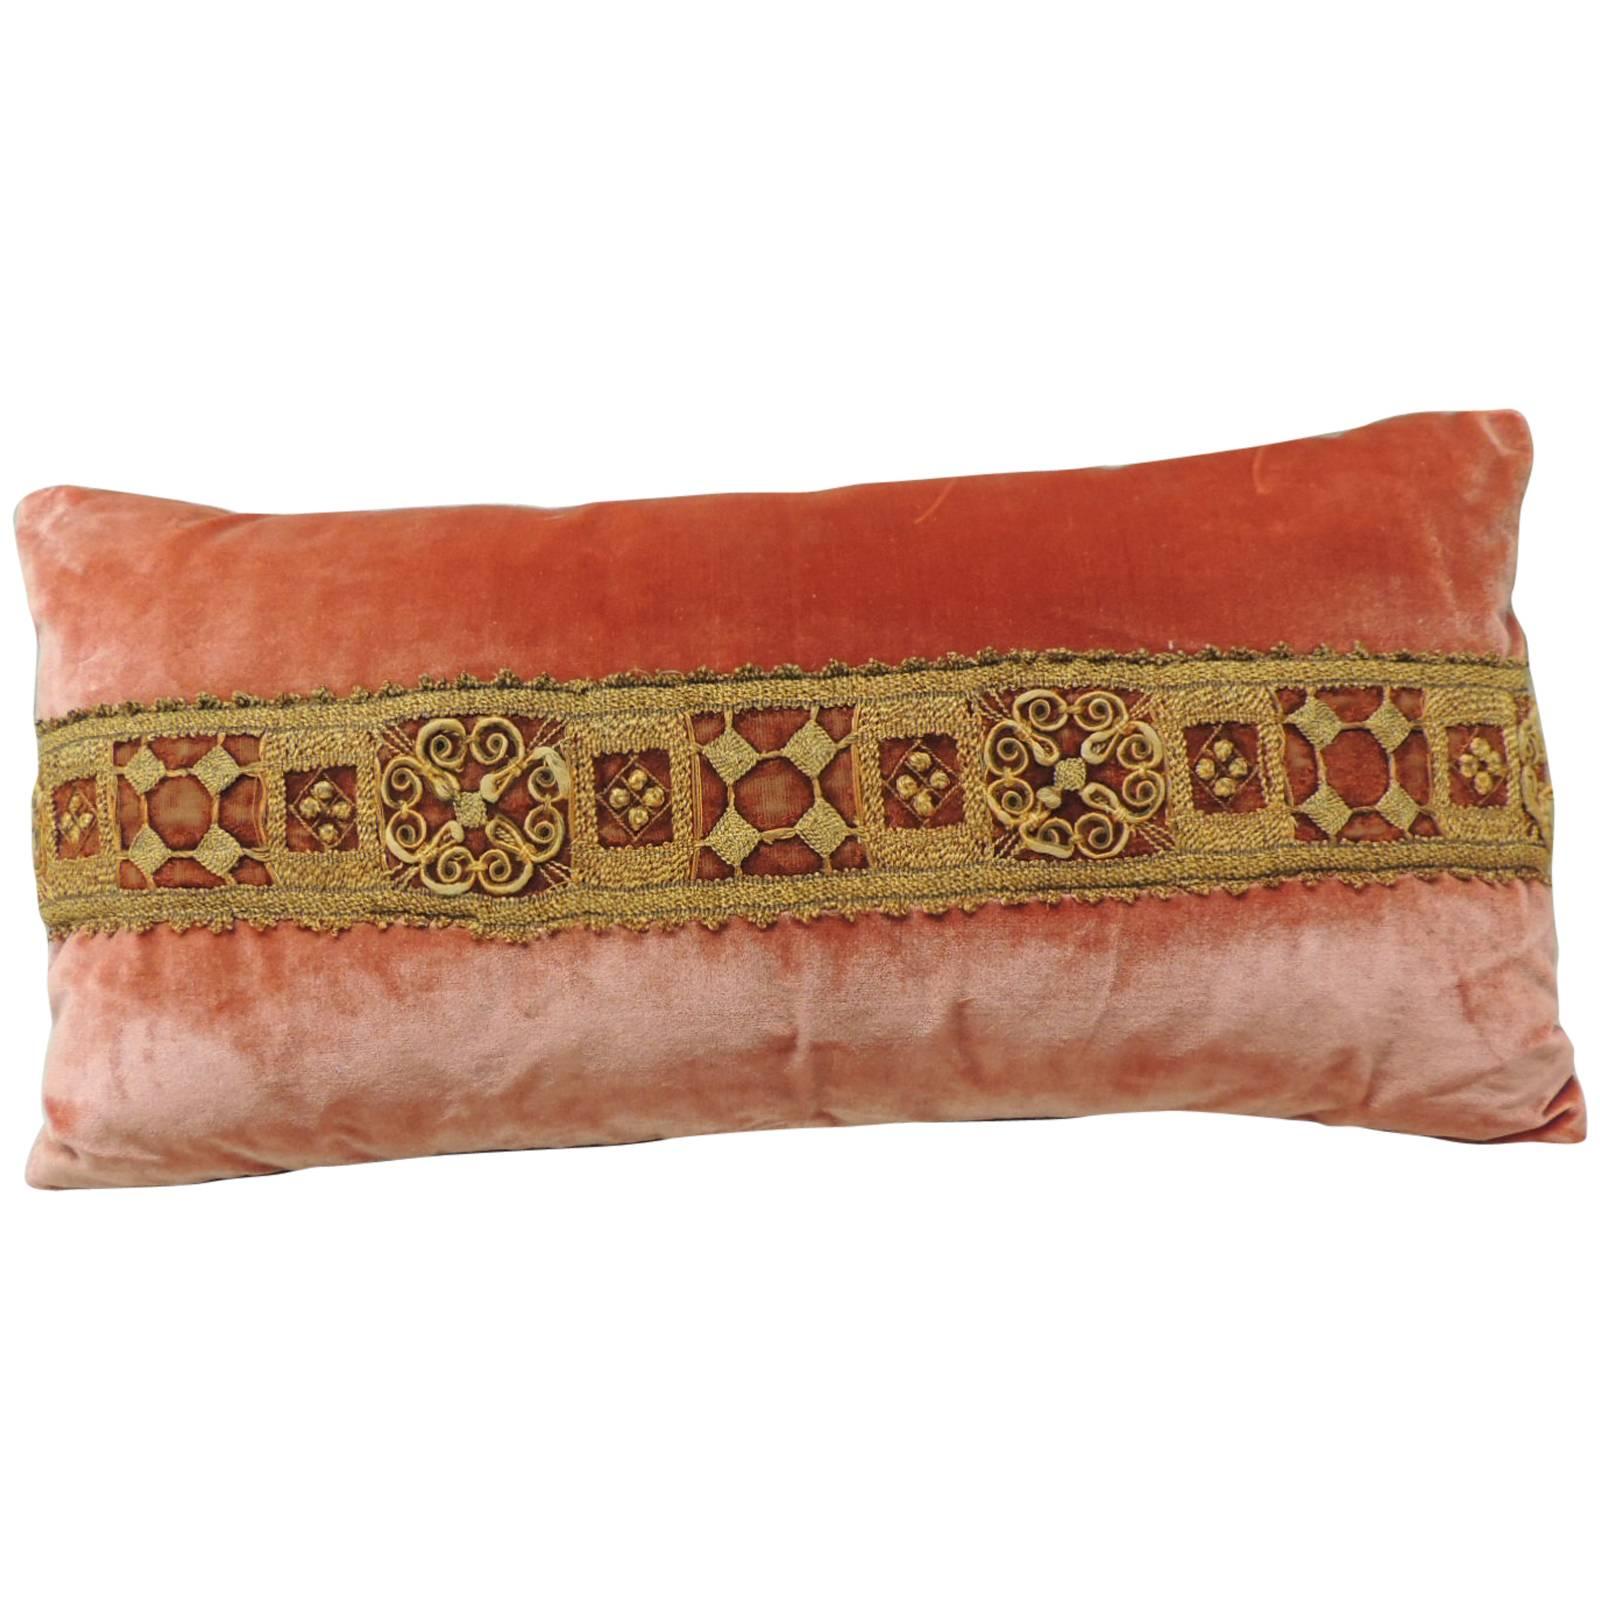 18th Century Silk Velvet Applique Bolster Pillow